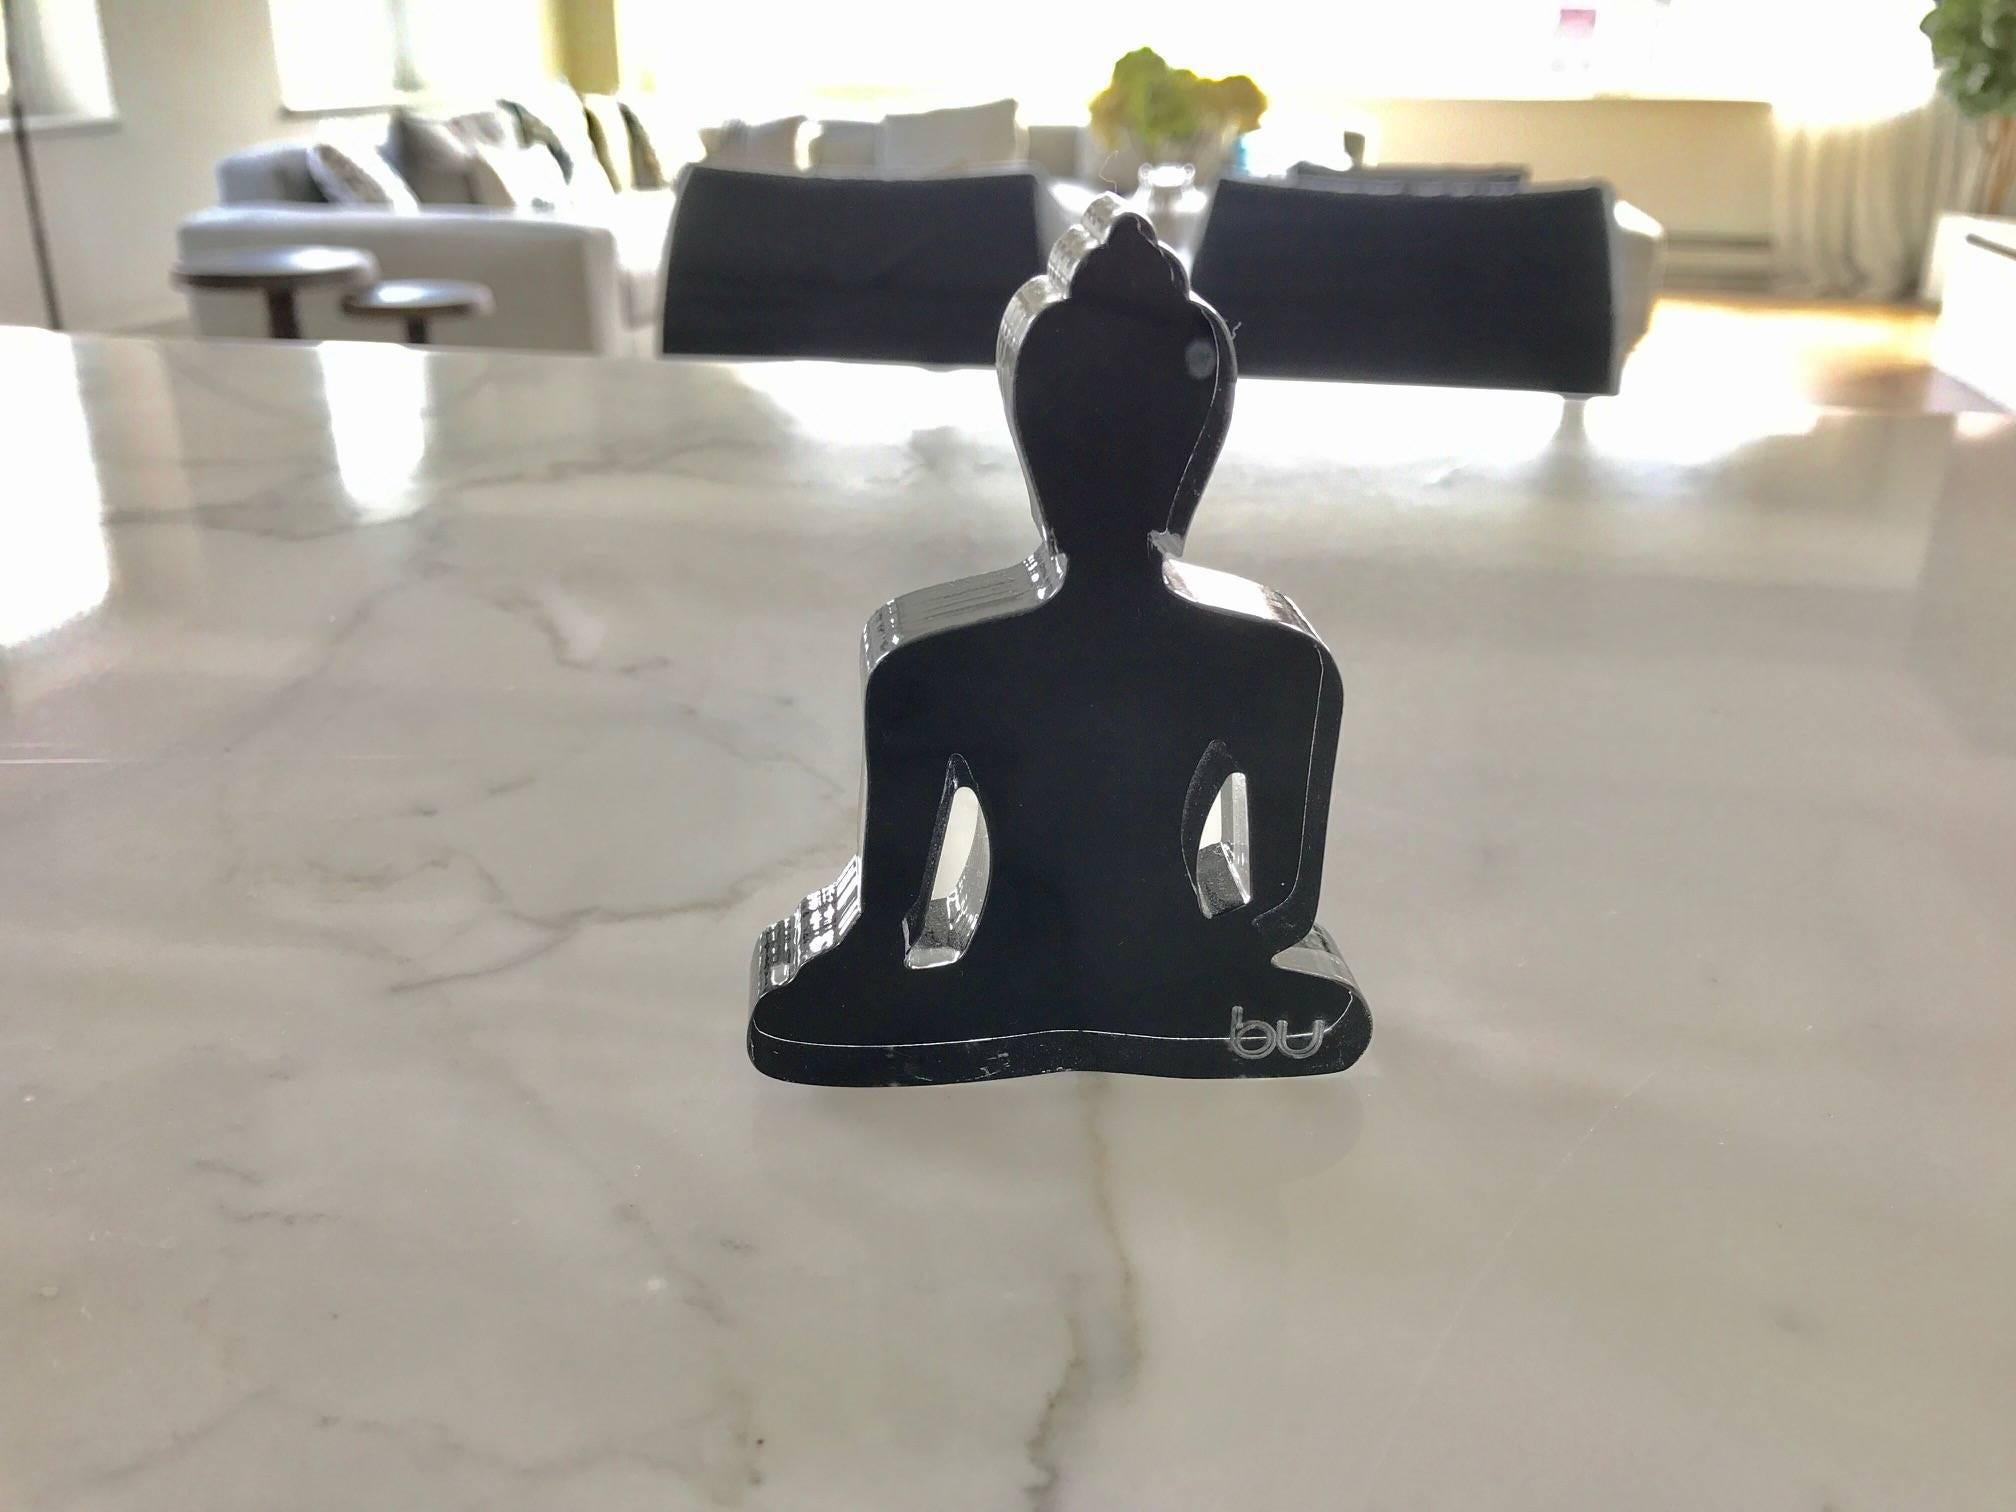 Ces statues colorées de Bouddha en méditation sont en plexiglas découpé au laser et en acrylique peint à la main.
Ils peuvent être utilisés seuls, en couple, en trio ou plus... 
Il s'agit d'une statue unique qui lancera une conversation et apportera